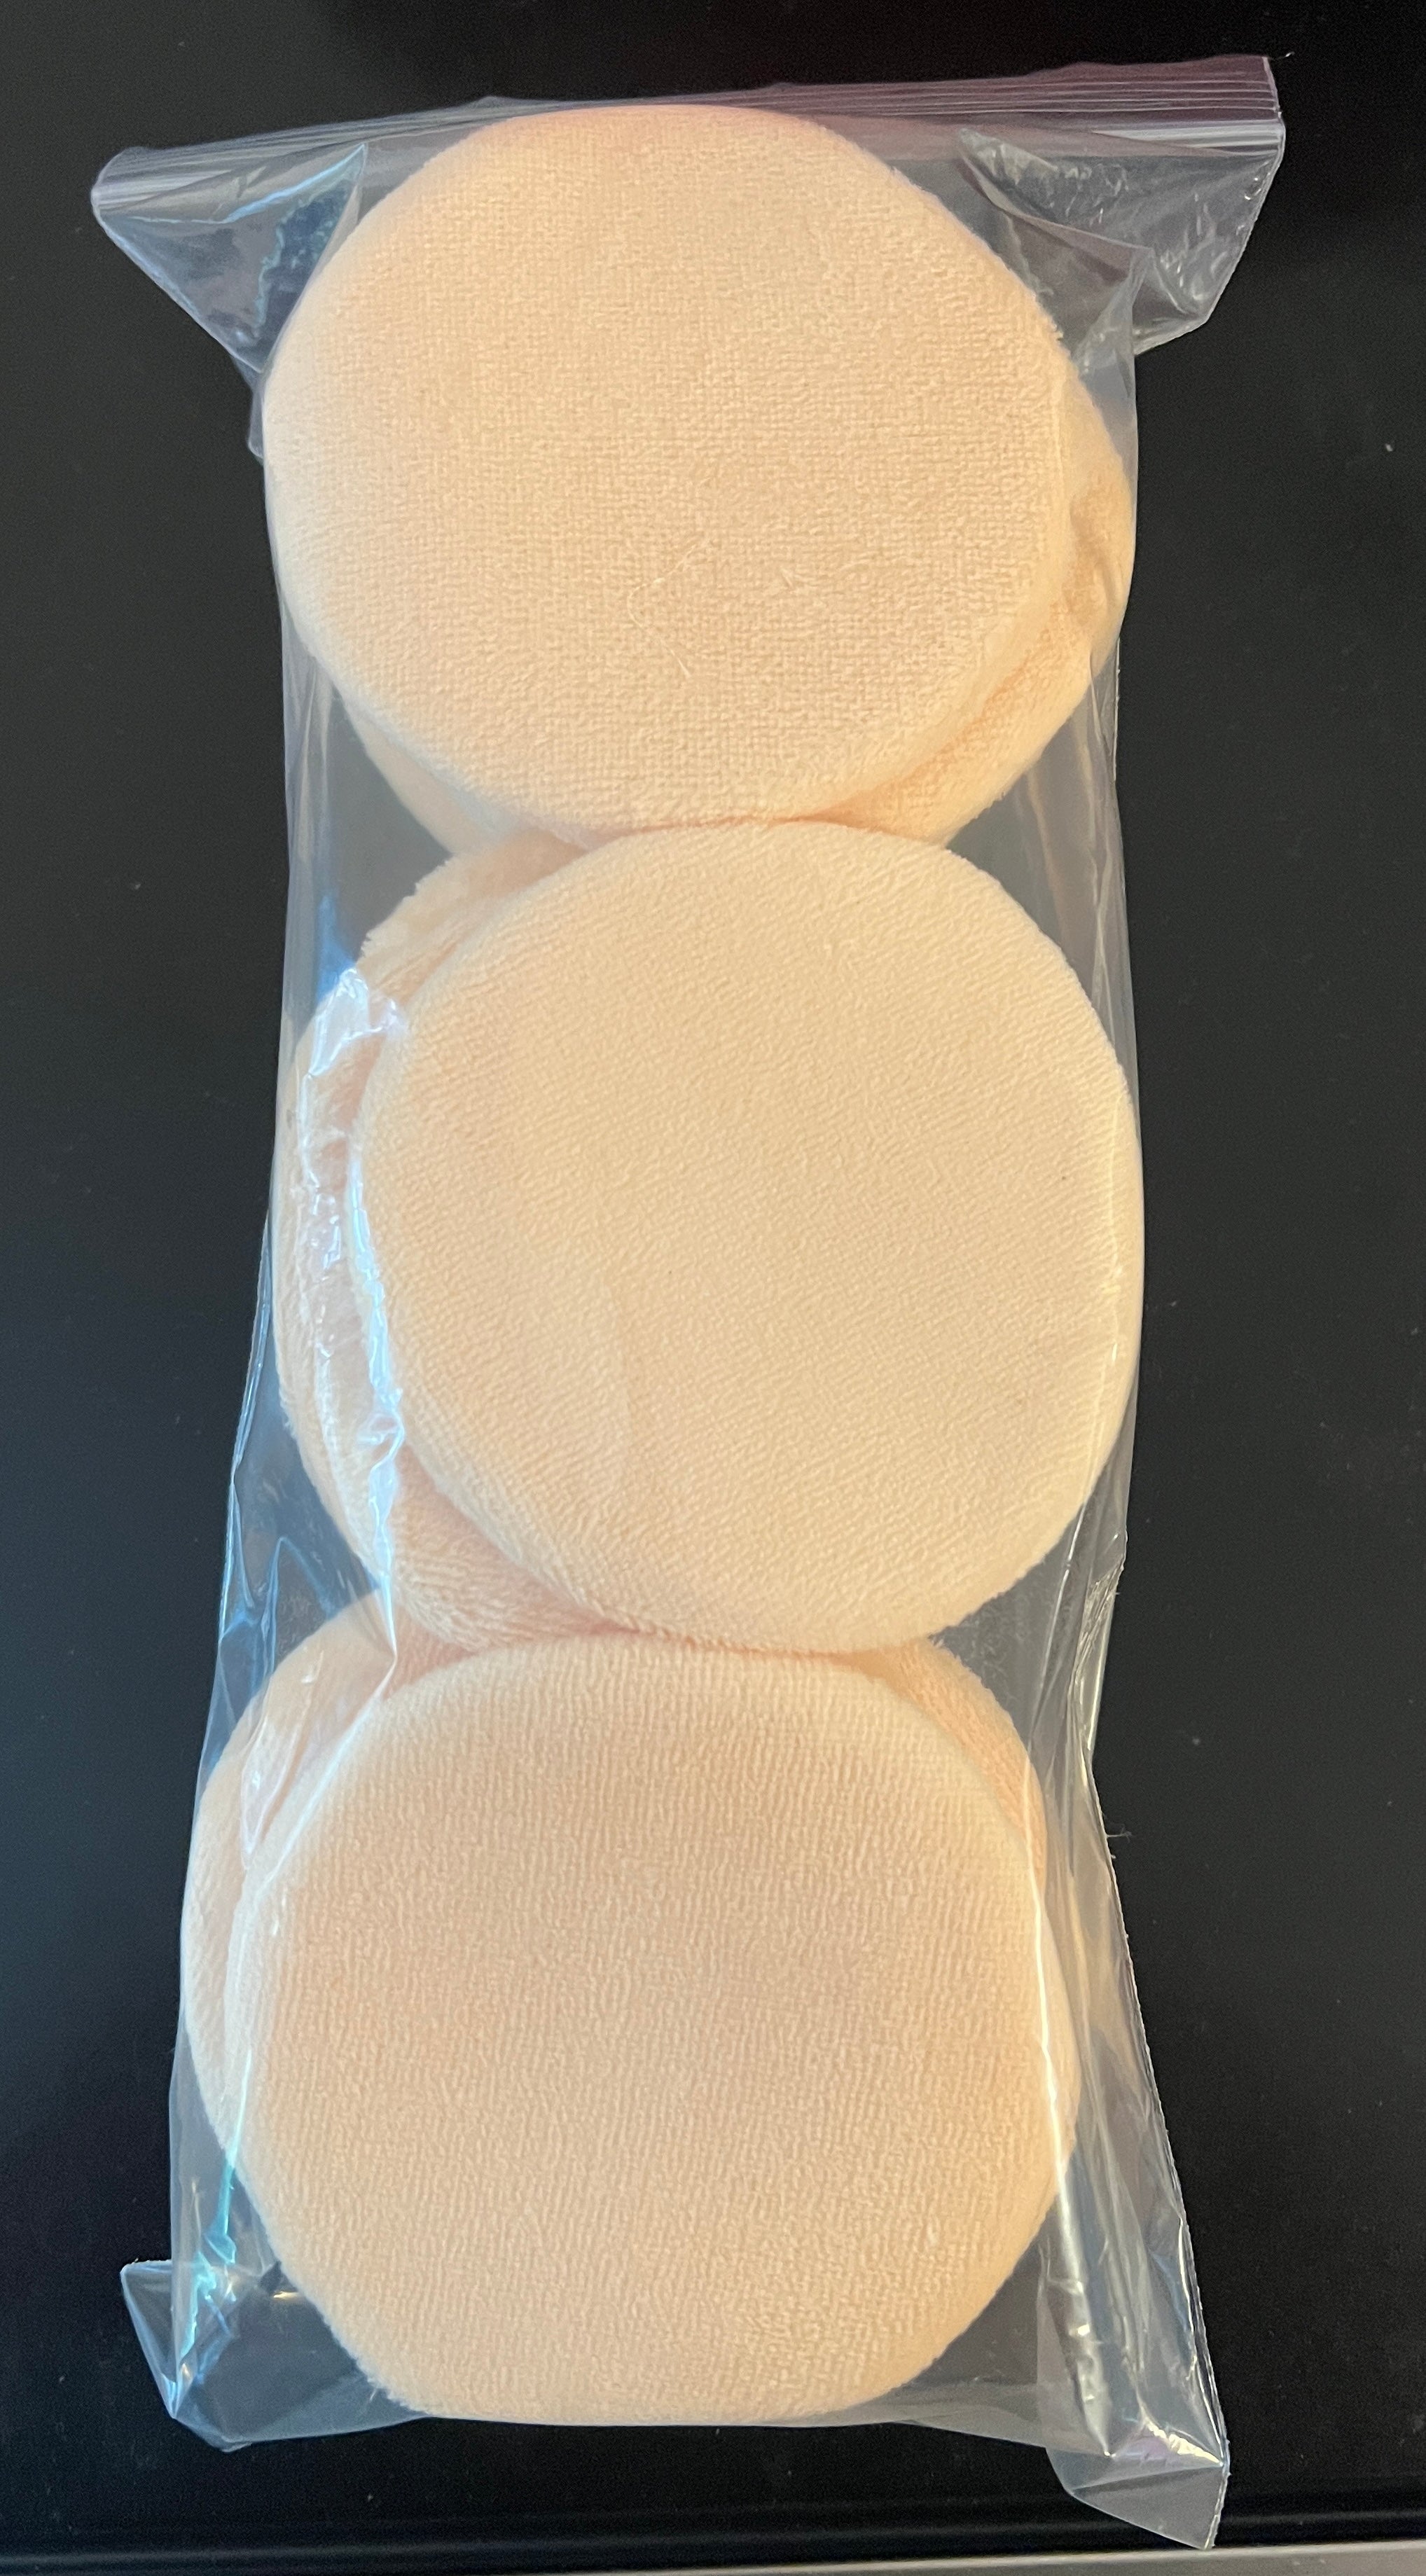 Velour Powder Puffs -peach, no ribbon 3.5” diameter